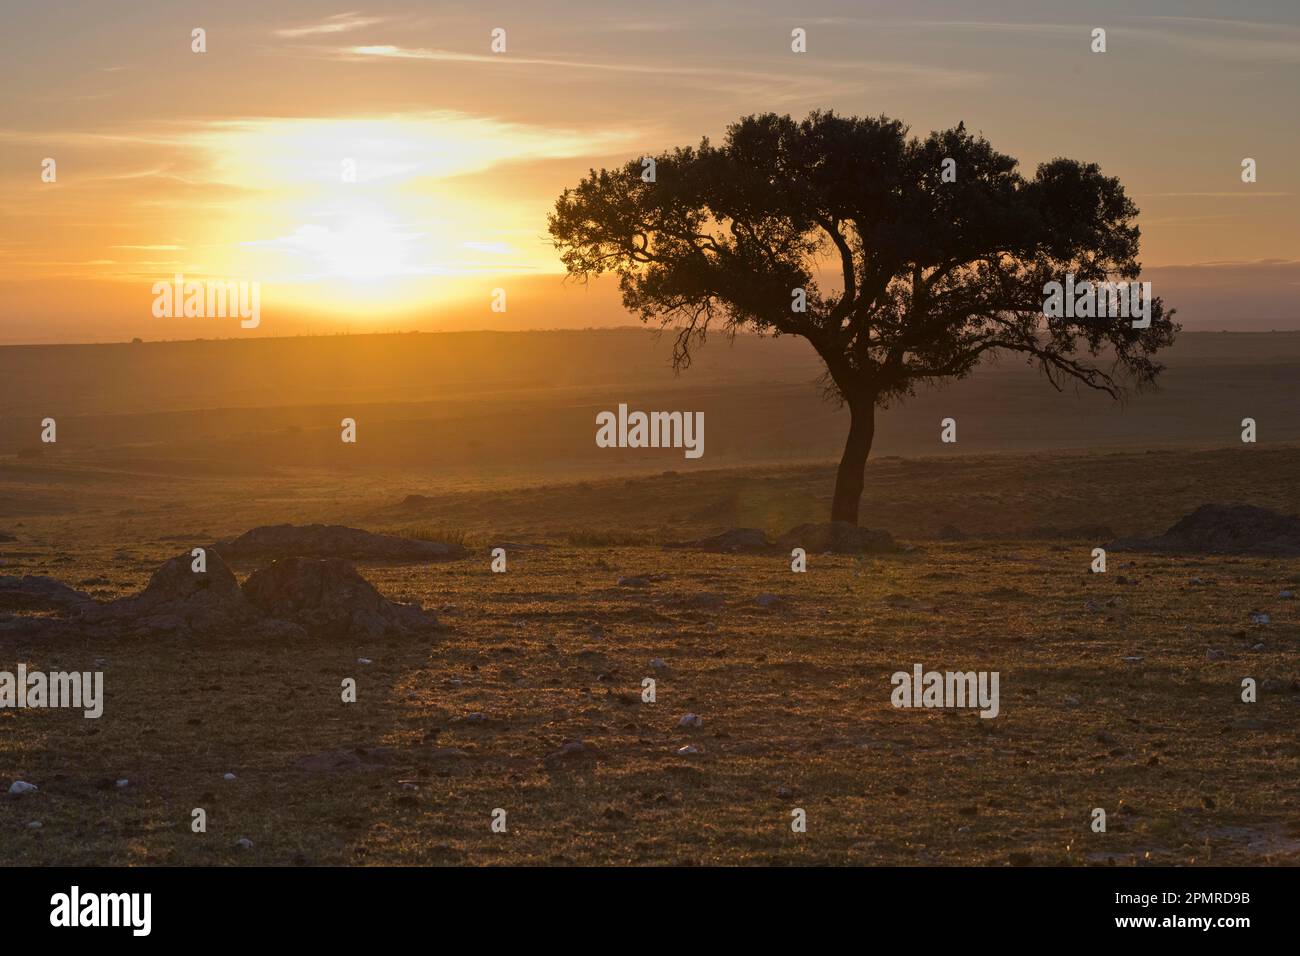 Holm oak (Quercus ilex) at sunrise, Extremadura, Spain Stock Photo